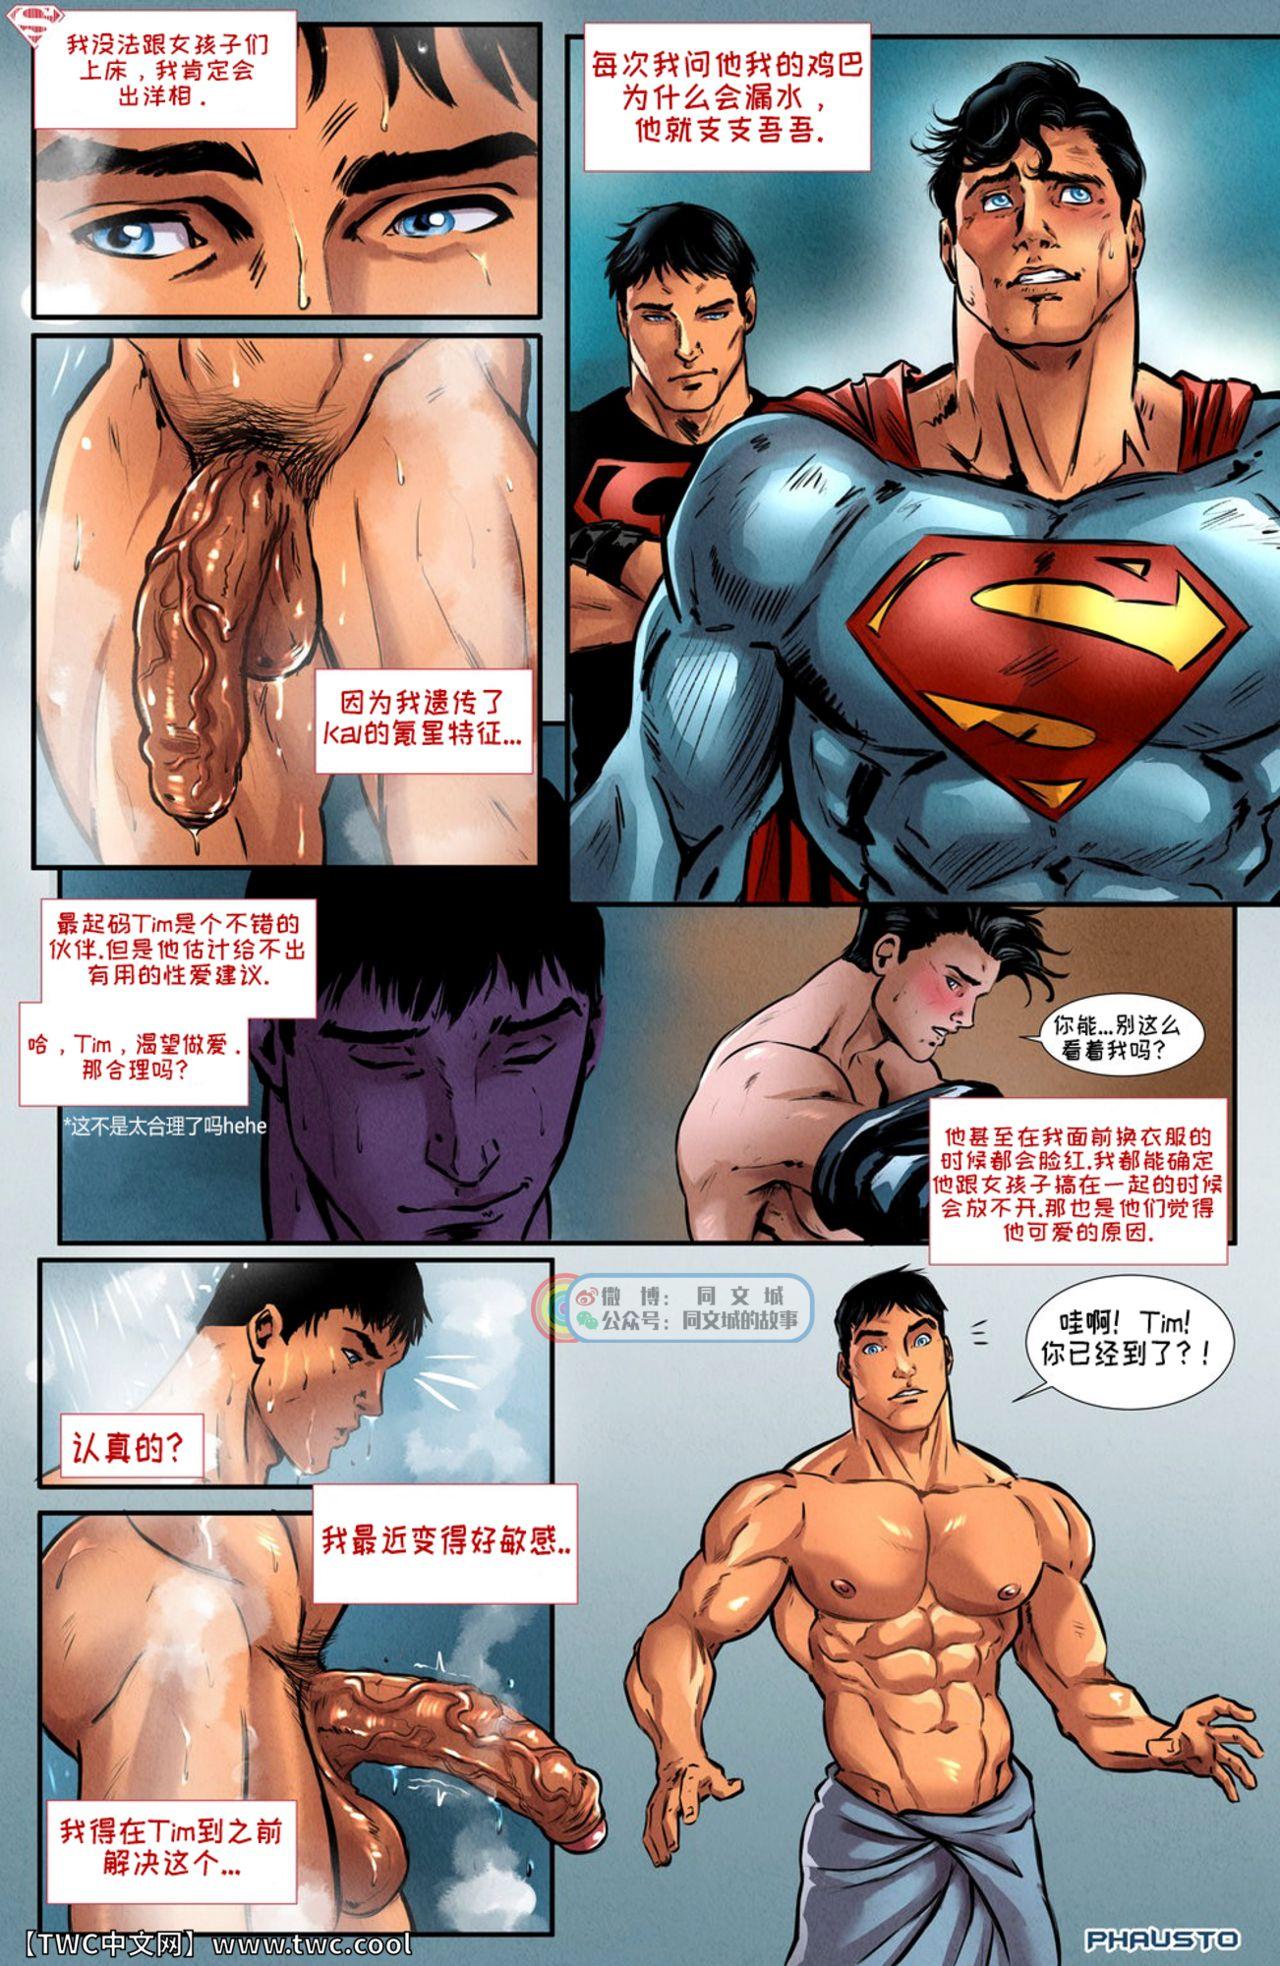 Rebolando Superboy - Superman Pay - Page 7